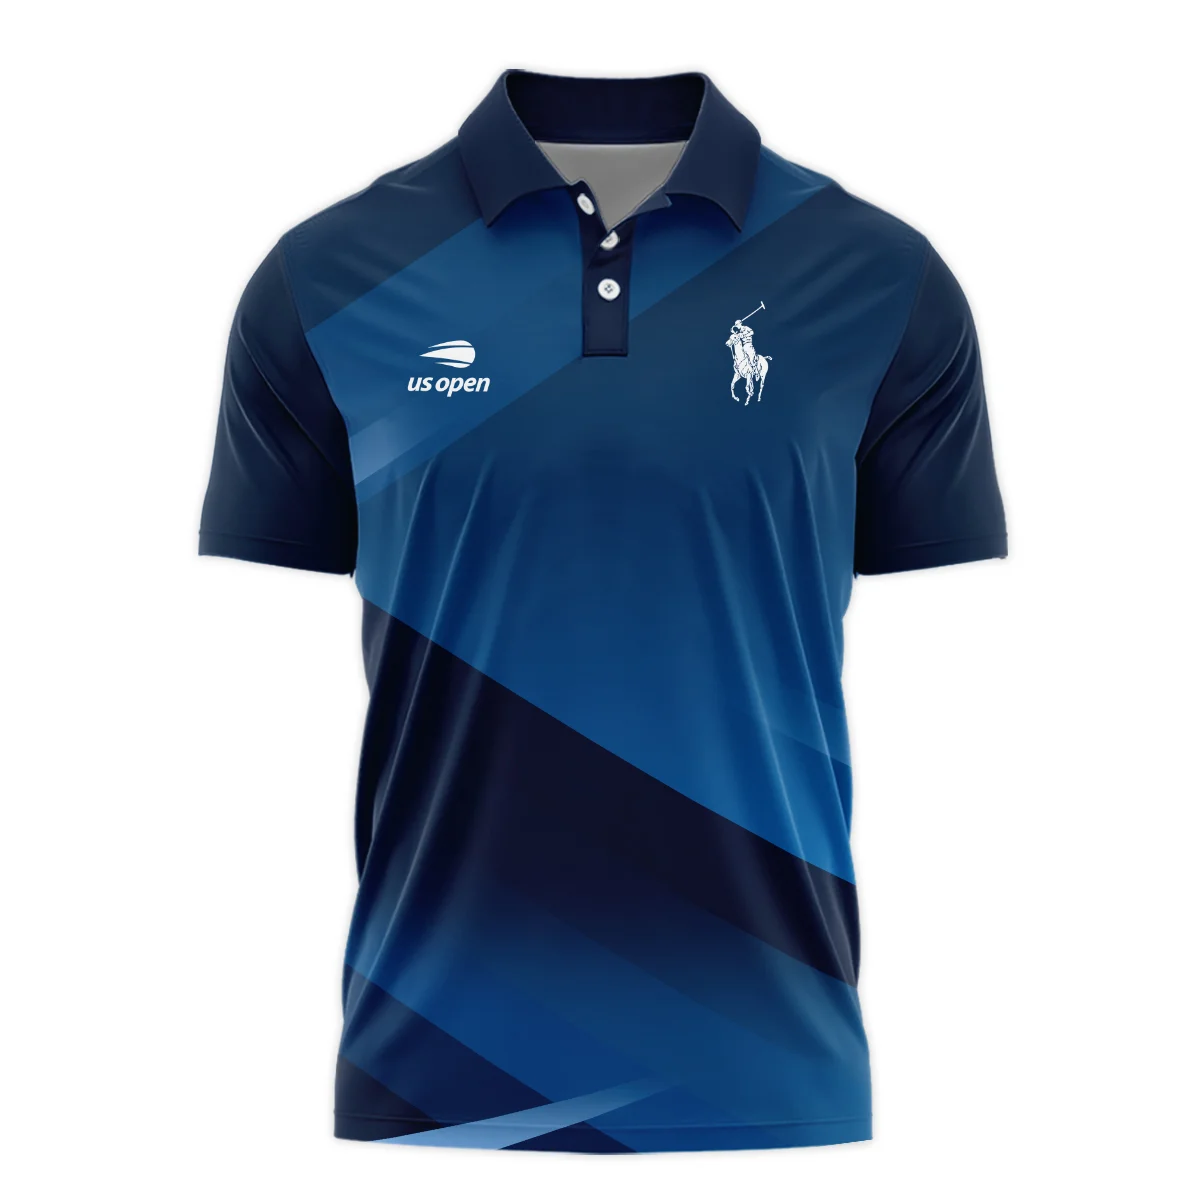 US Open Tennis Champions Dark Blue Background Ralph Lauren Polo Shirt Mandarin Collar Polo Shirt